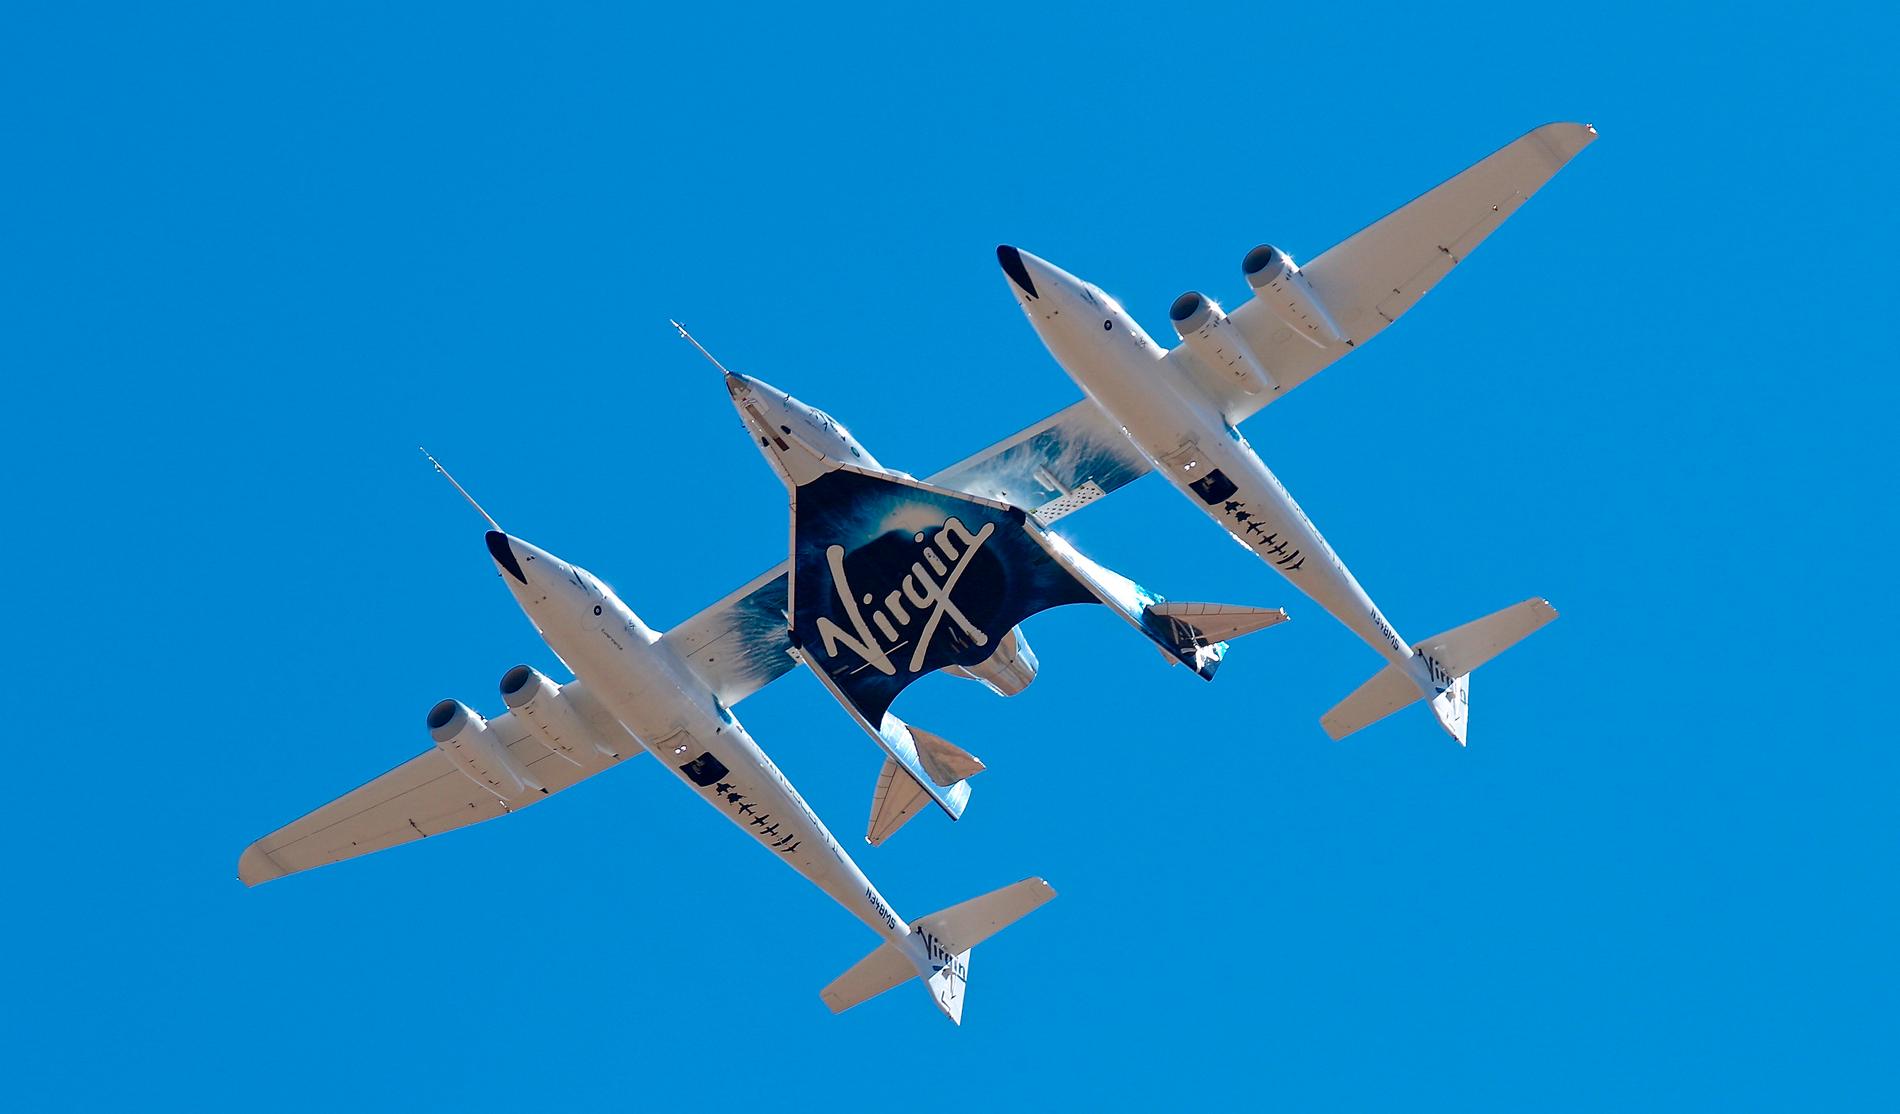 Virgin Galactics rymdfarkost VSS Unity (i mitten) fraktas högt upp i luften av ett specialbyggt flygplan, innan den startar sina motorer. Arkivbild.